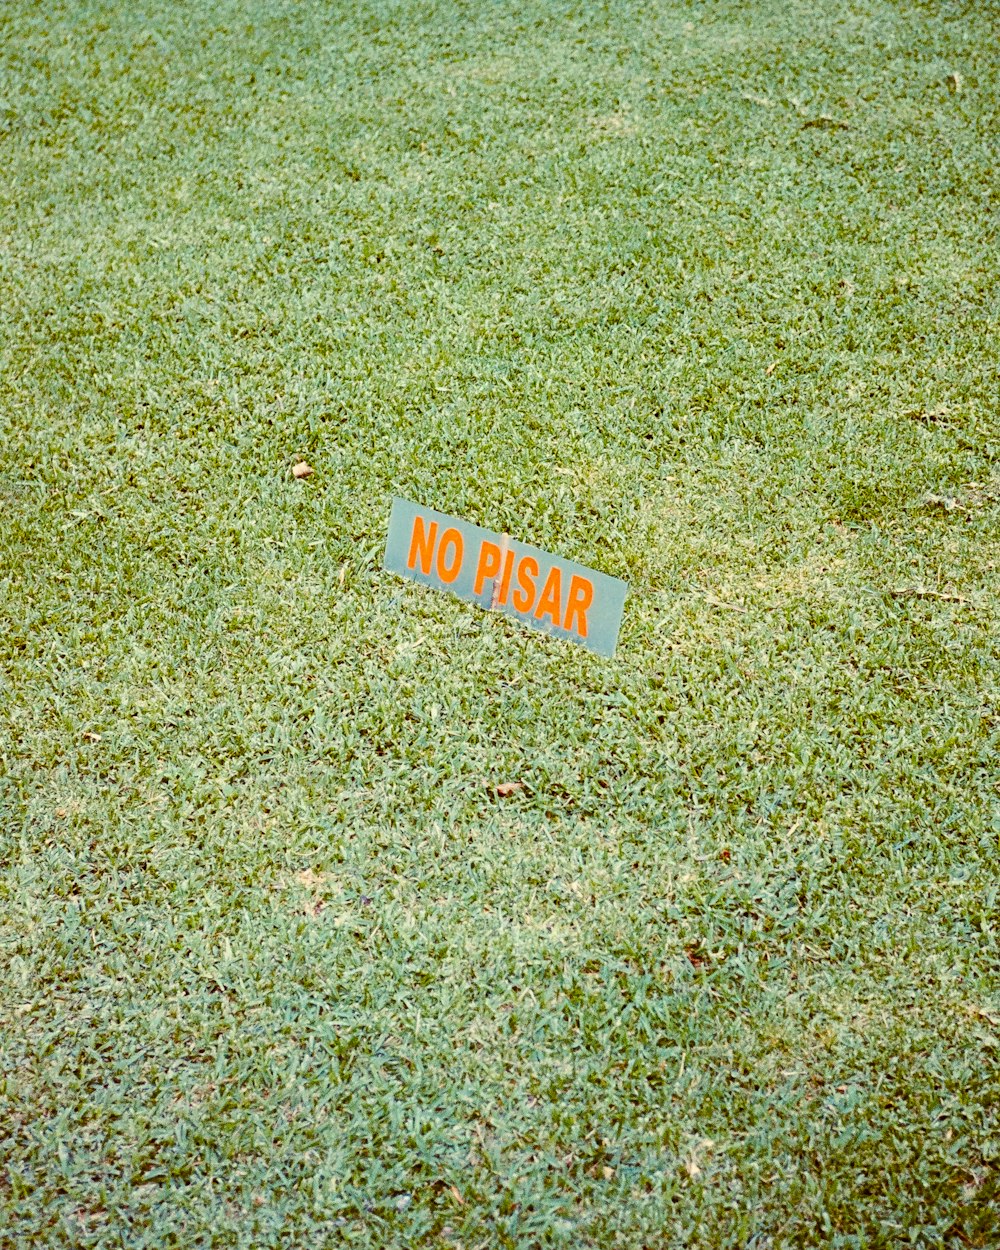 um sinal que está sentado na grama